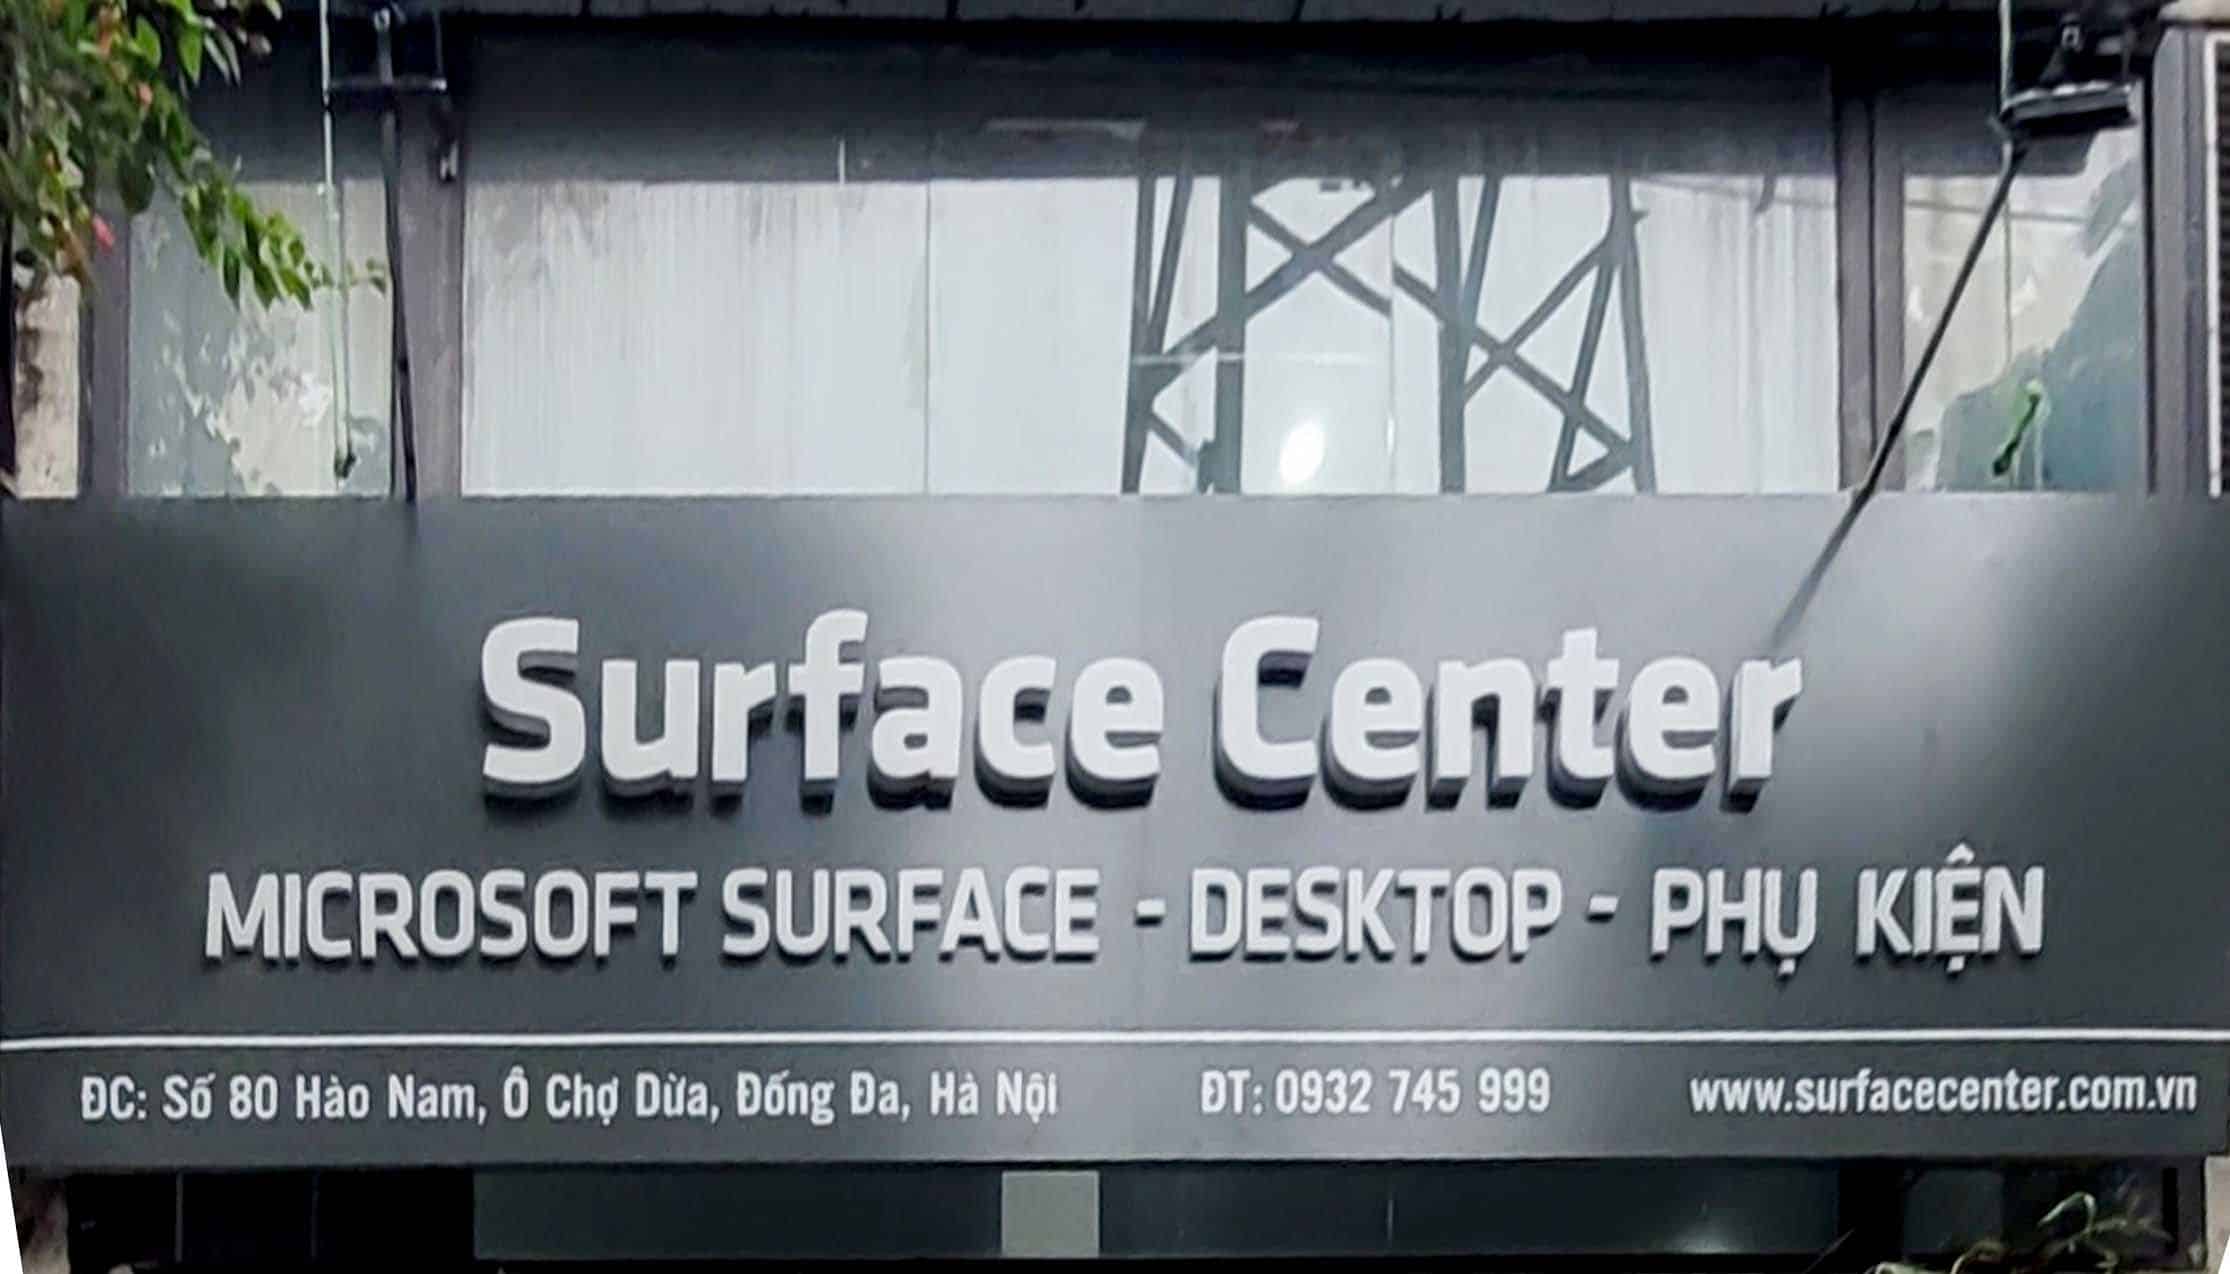 Ảnh cửa hàng Surface Center số 80 Hào Nam